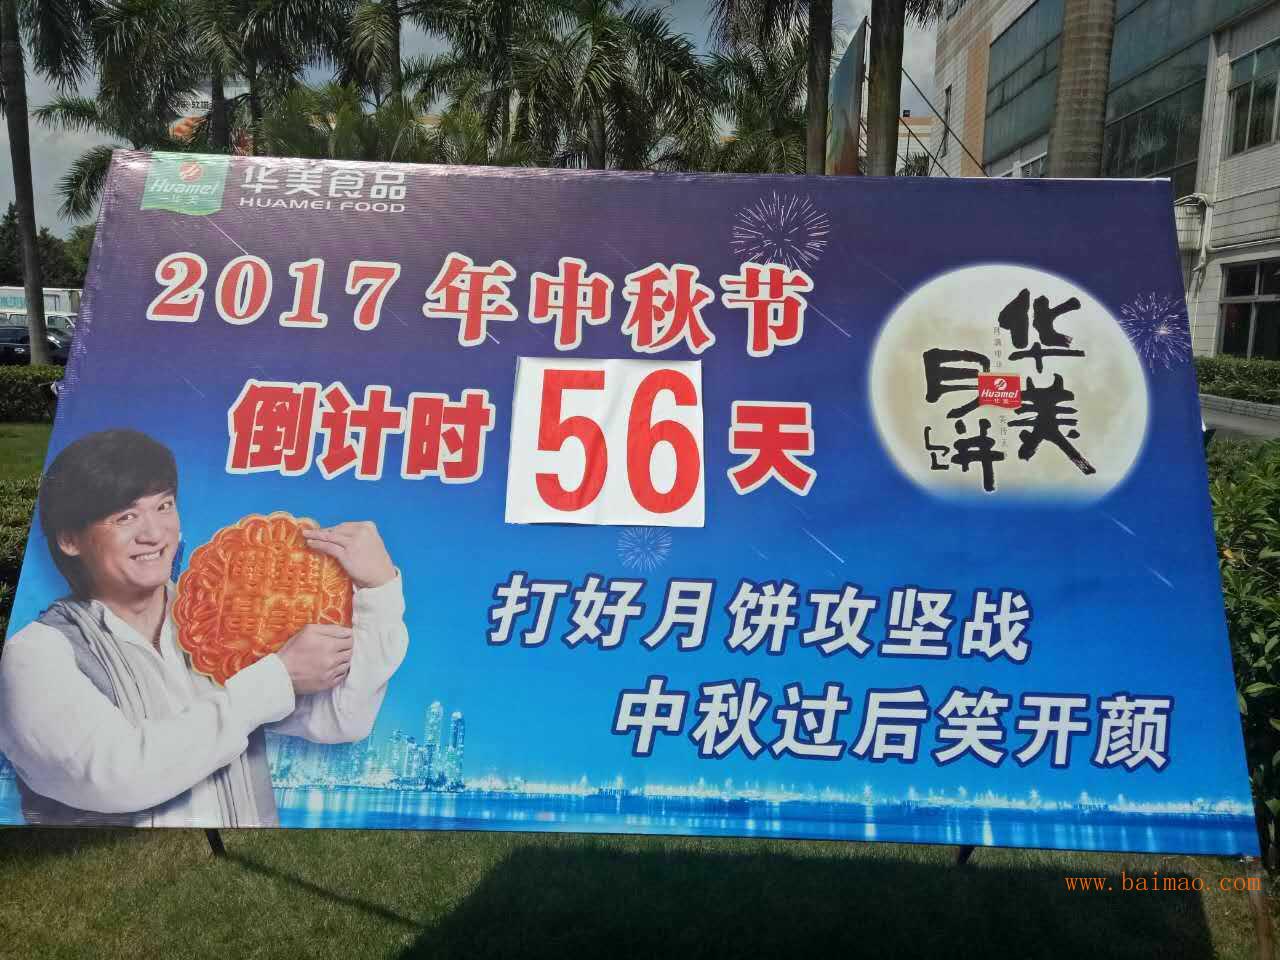 2017年华美月饼批发,东莞华美月饼厂家正式开售,